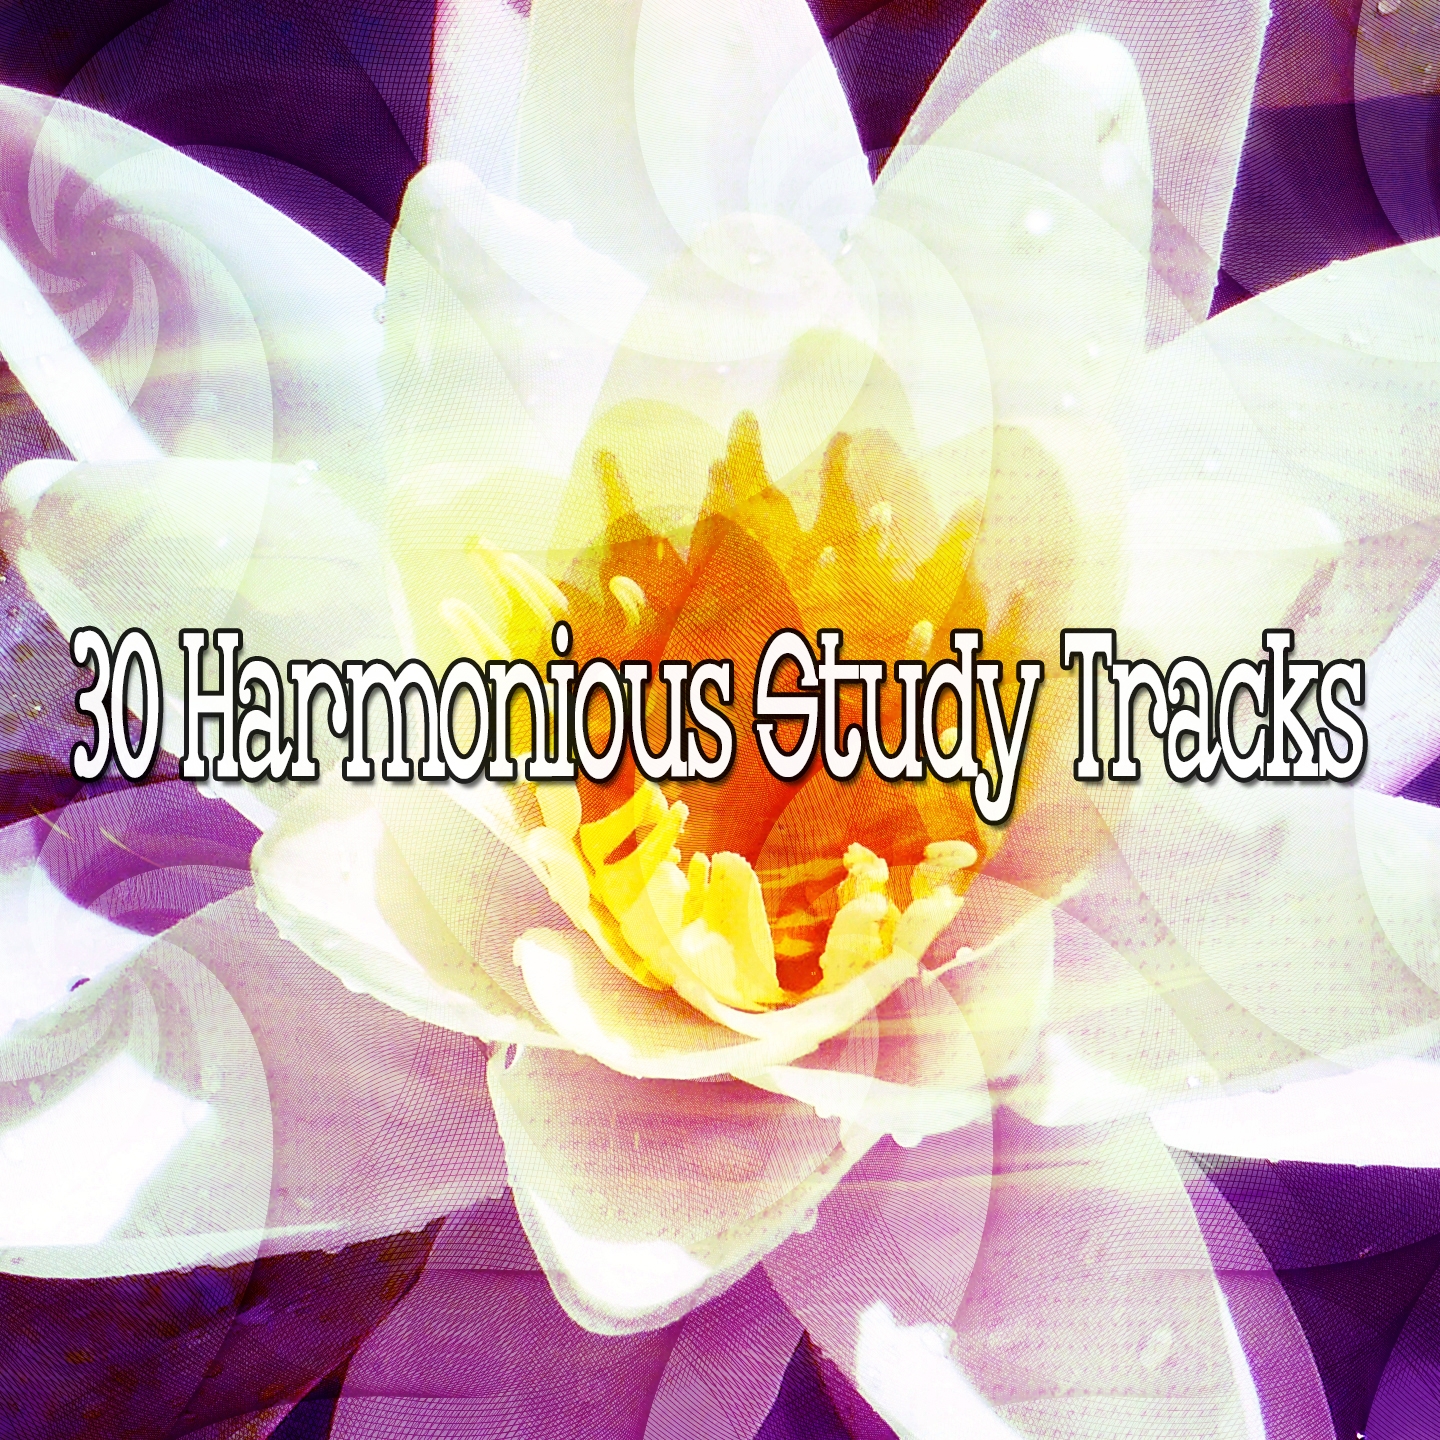 30 Harmonious Study Tracks